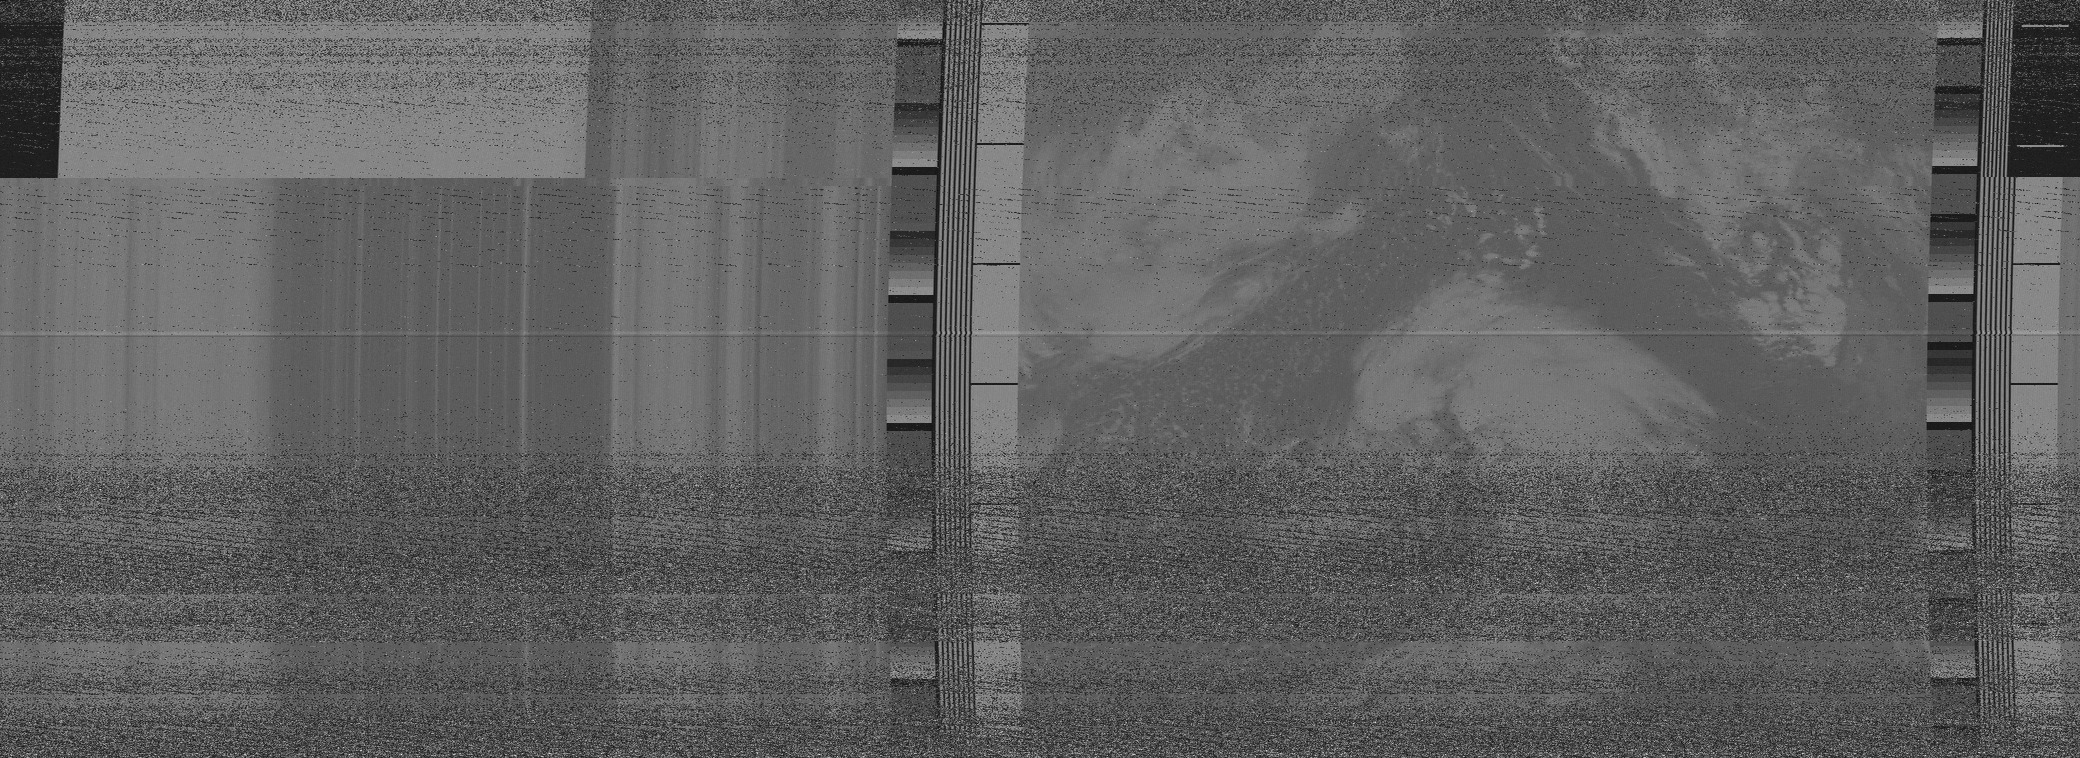 unsynced broken NOAA image